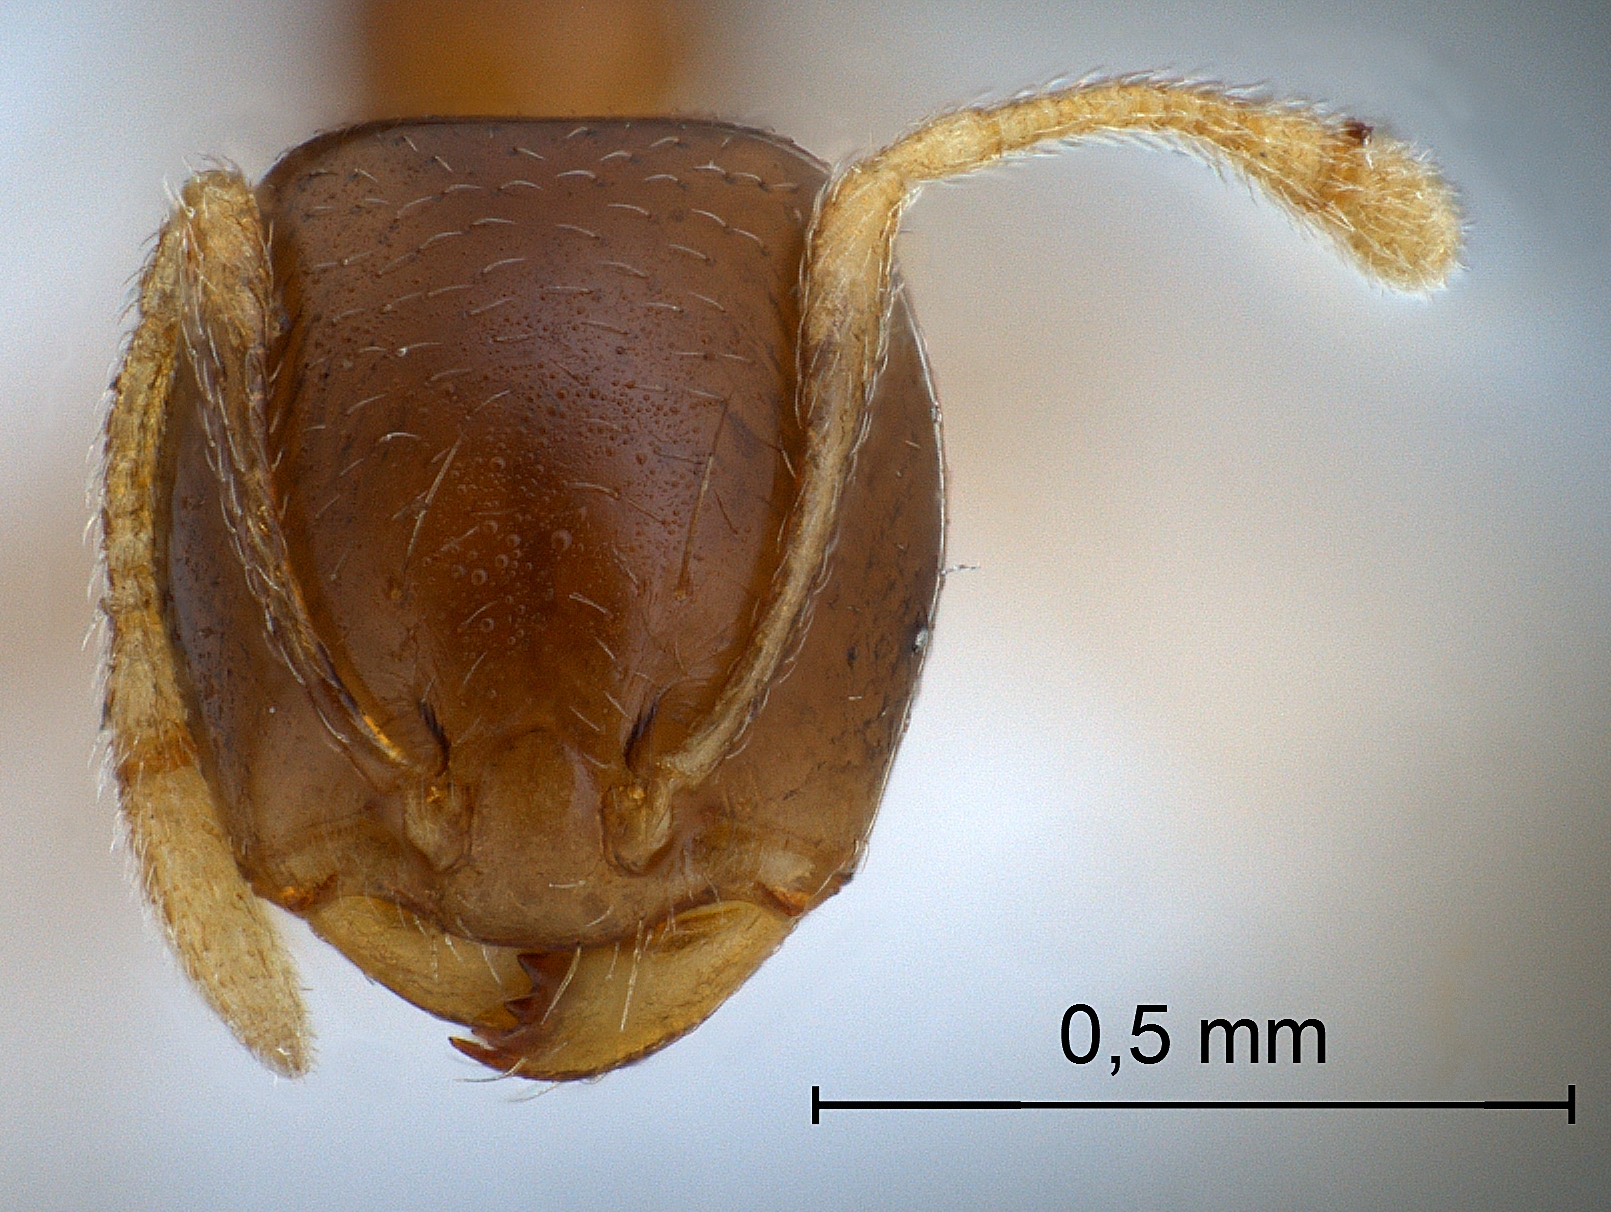 Pheidologeton pygmaeus frontal